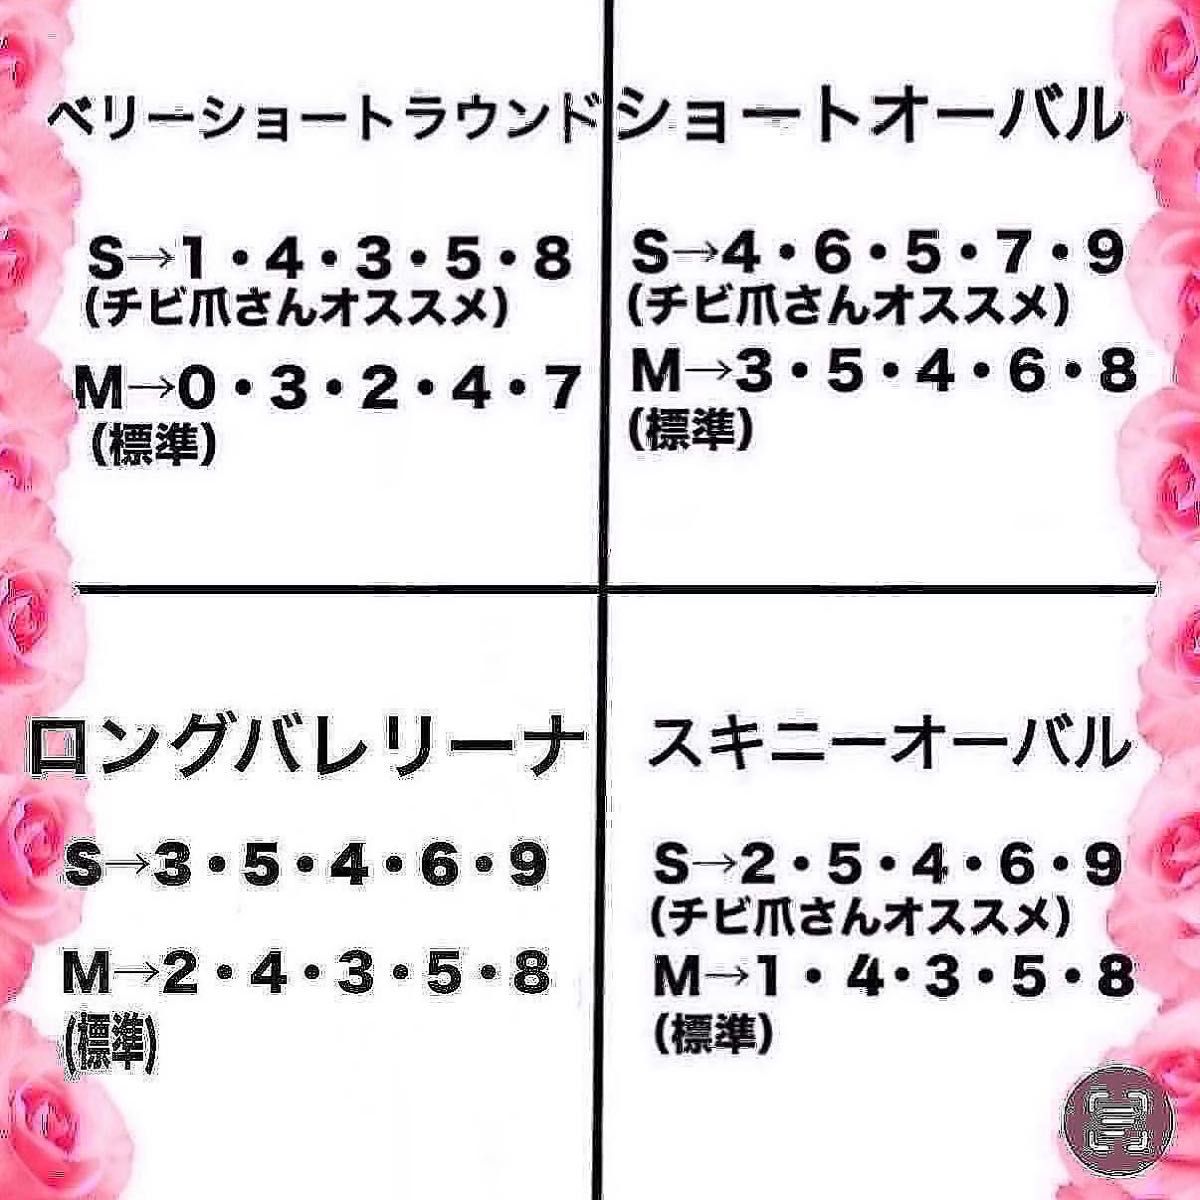 【413】人気のピンク大理石ネイルニュアンスオールシーズンOK